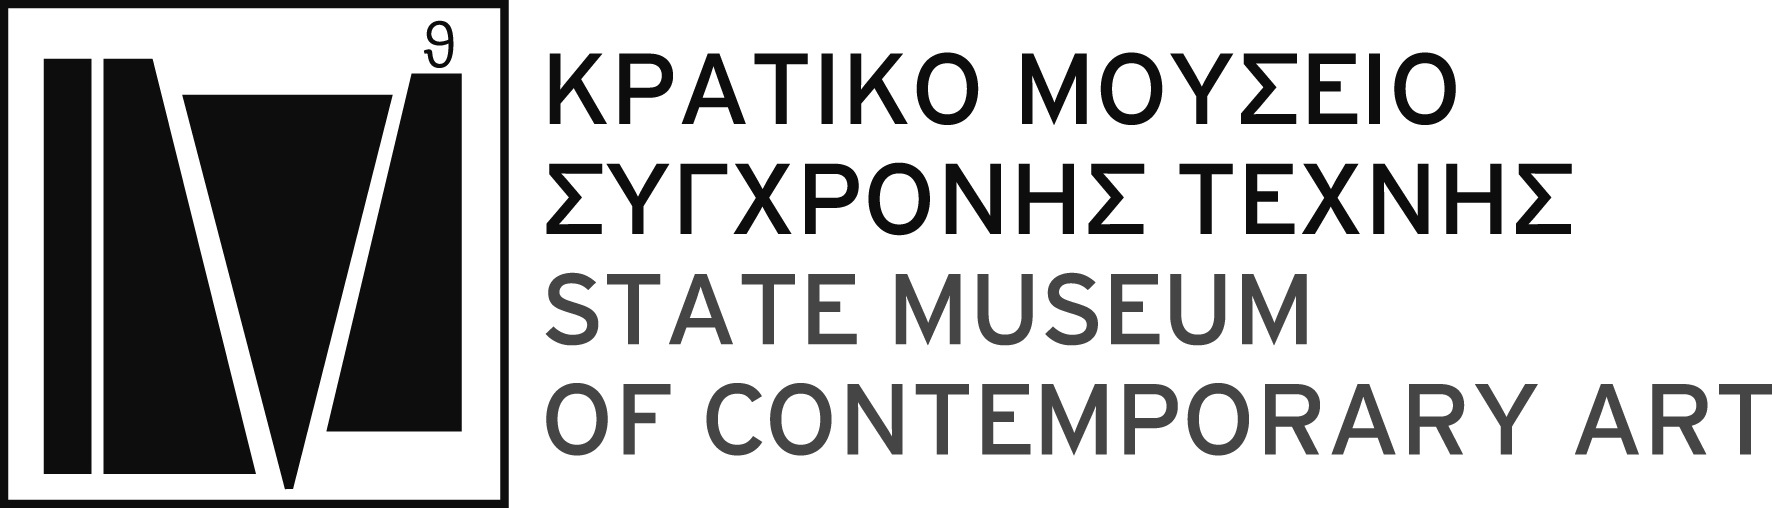 Πληροφορίες/ Παροχή διευκρινίσεων : Αθηνά Ιωάννου Τηλέφωνο : 2310-589140-42 FAX : 2310-600123 E-mail : info@greekstatemuseum.com Θεσσαλονίκη, 16/ 10 / 2015 Αρ. πρωτ.